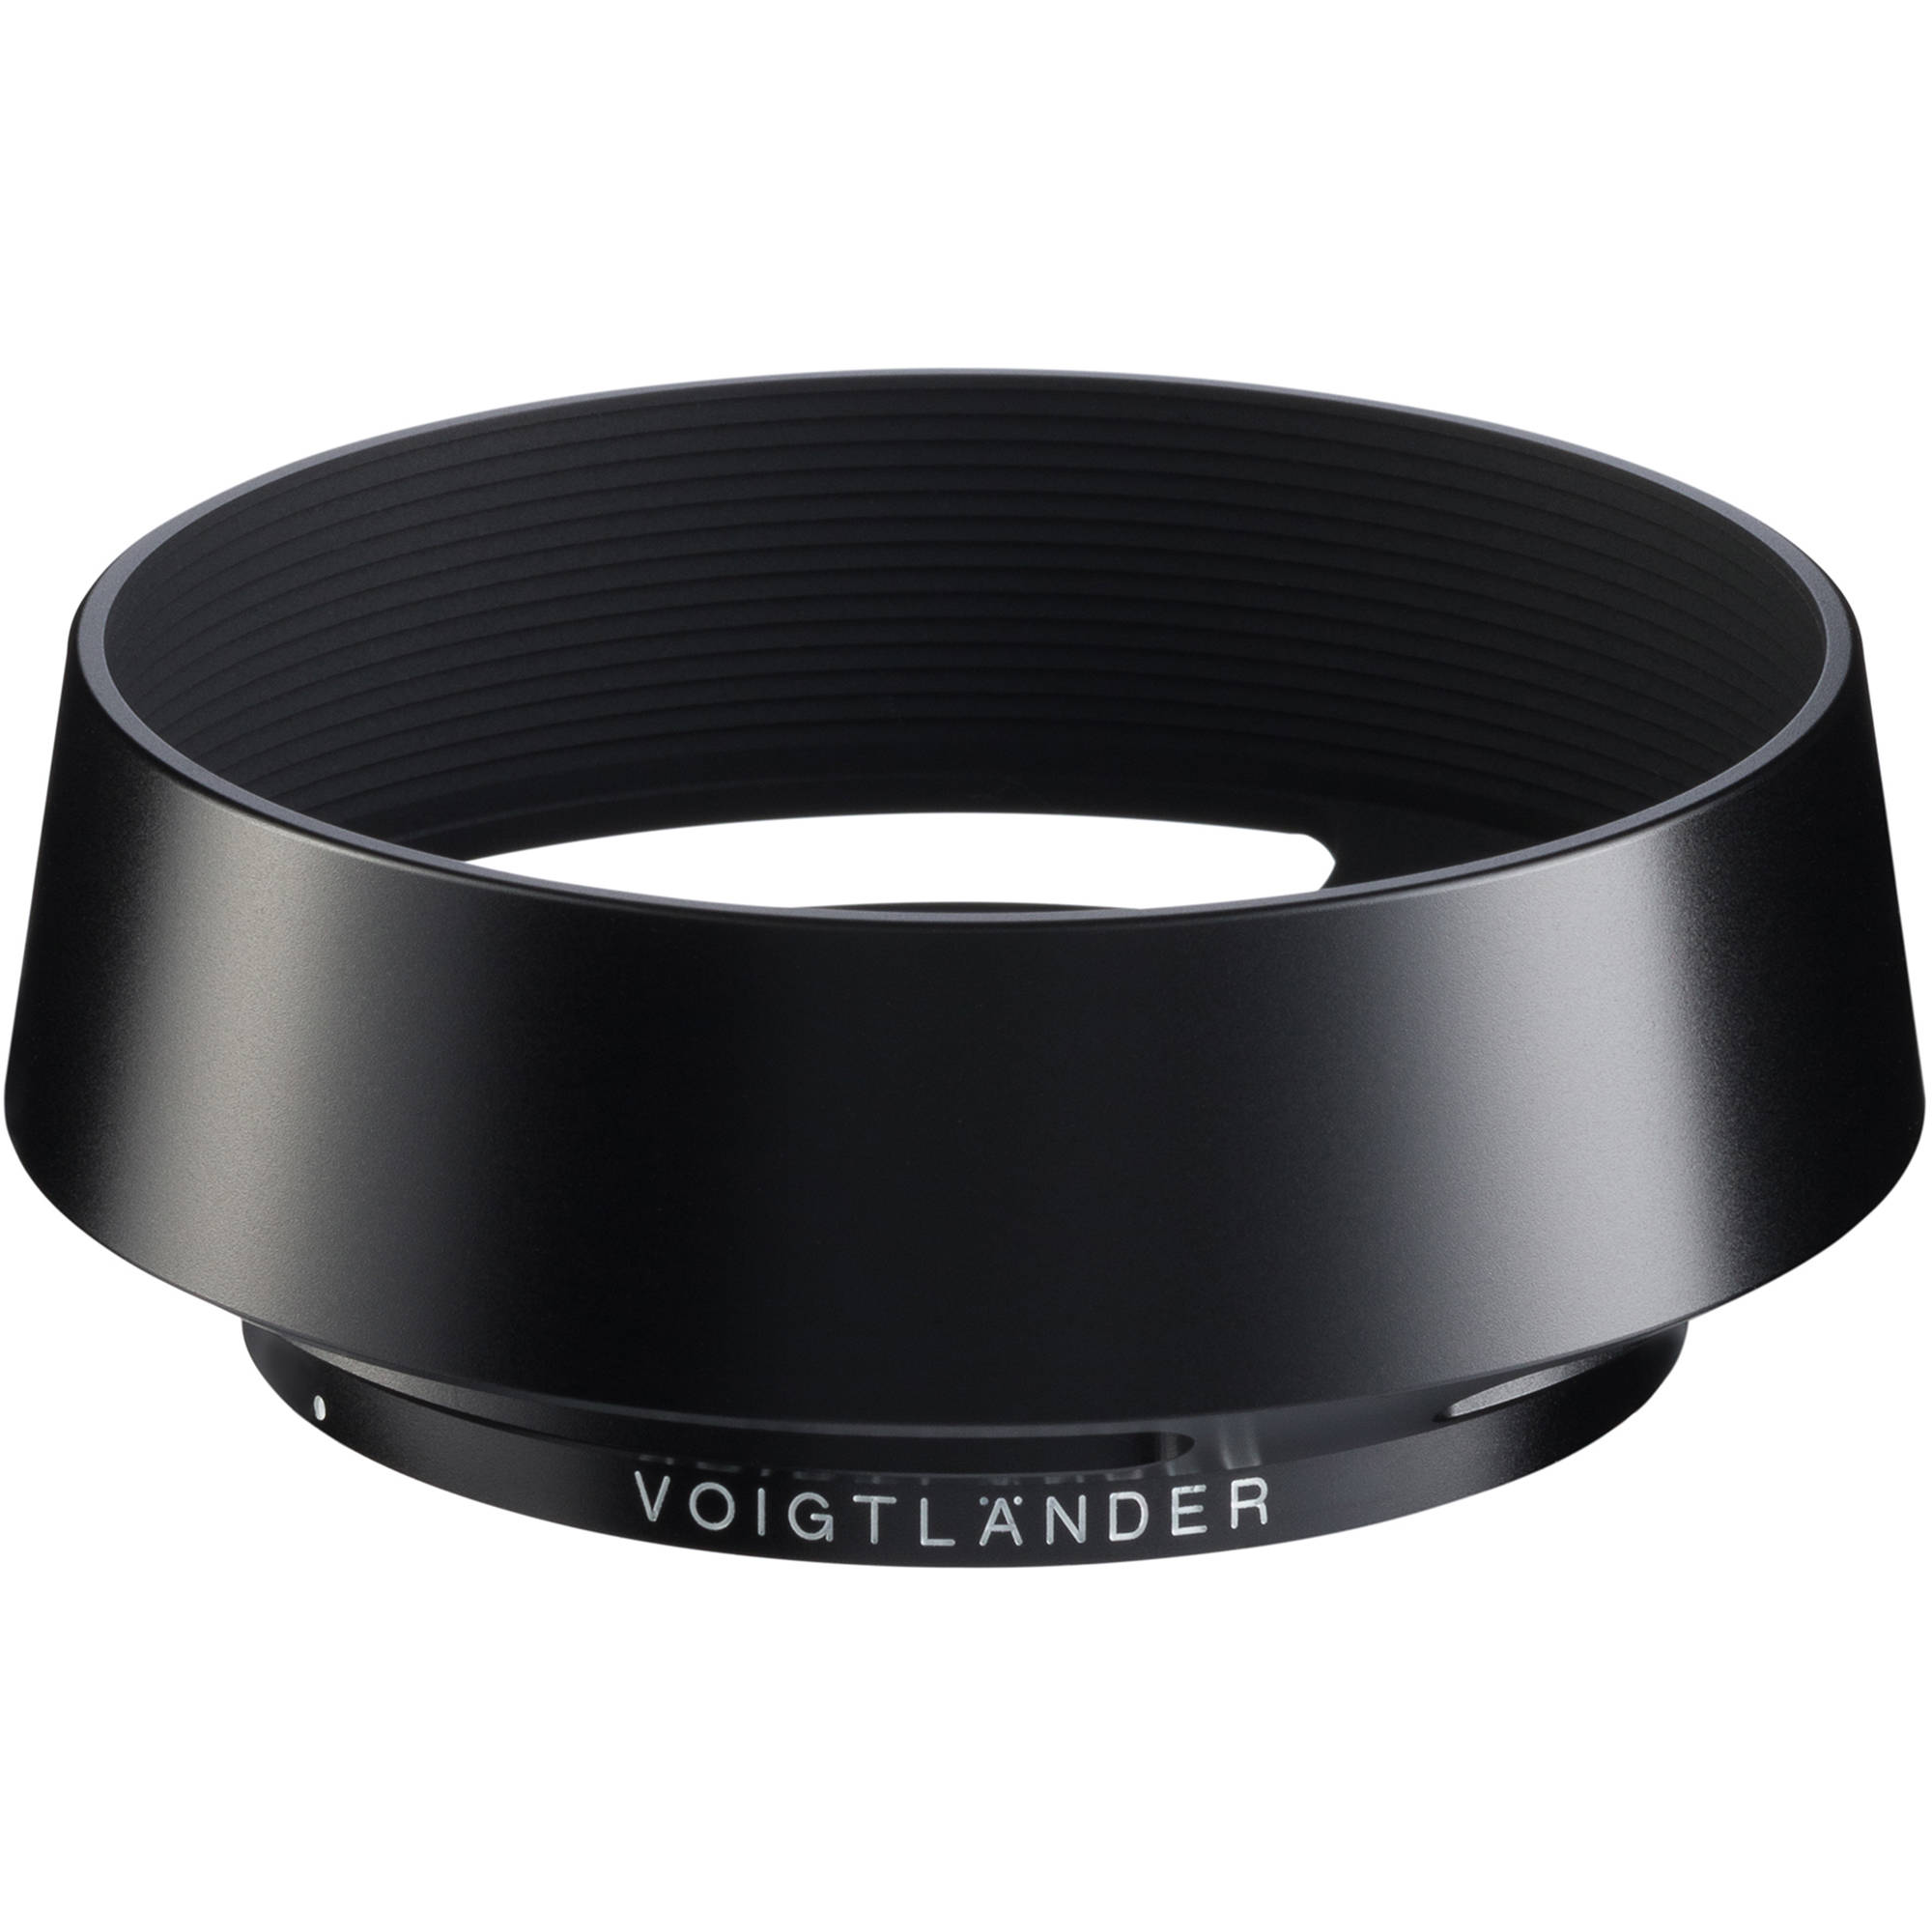 TVignette pour Voigtlander Pare-Soleil LH-10